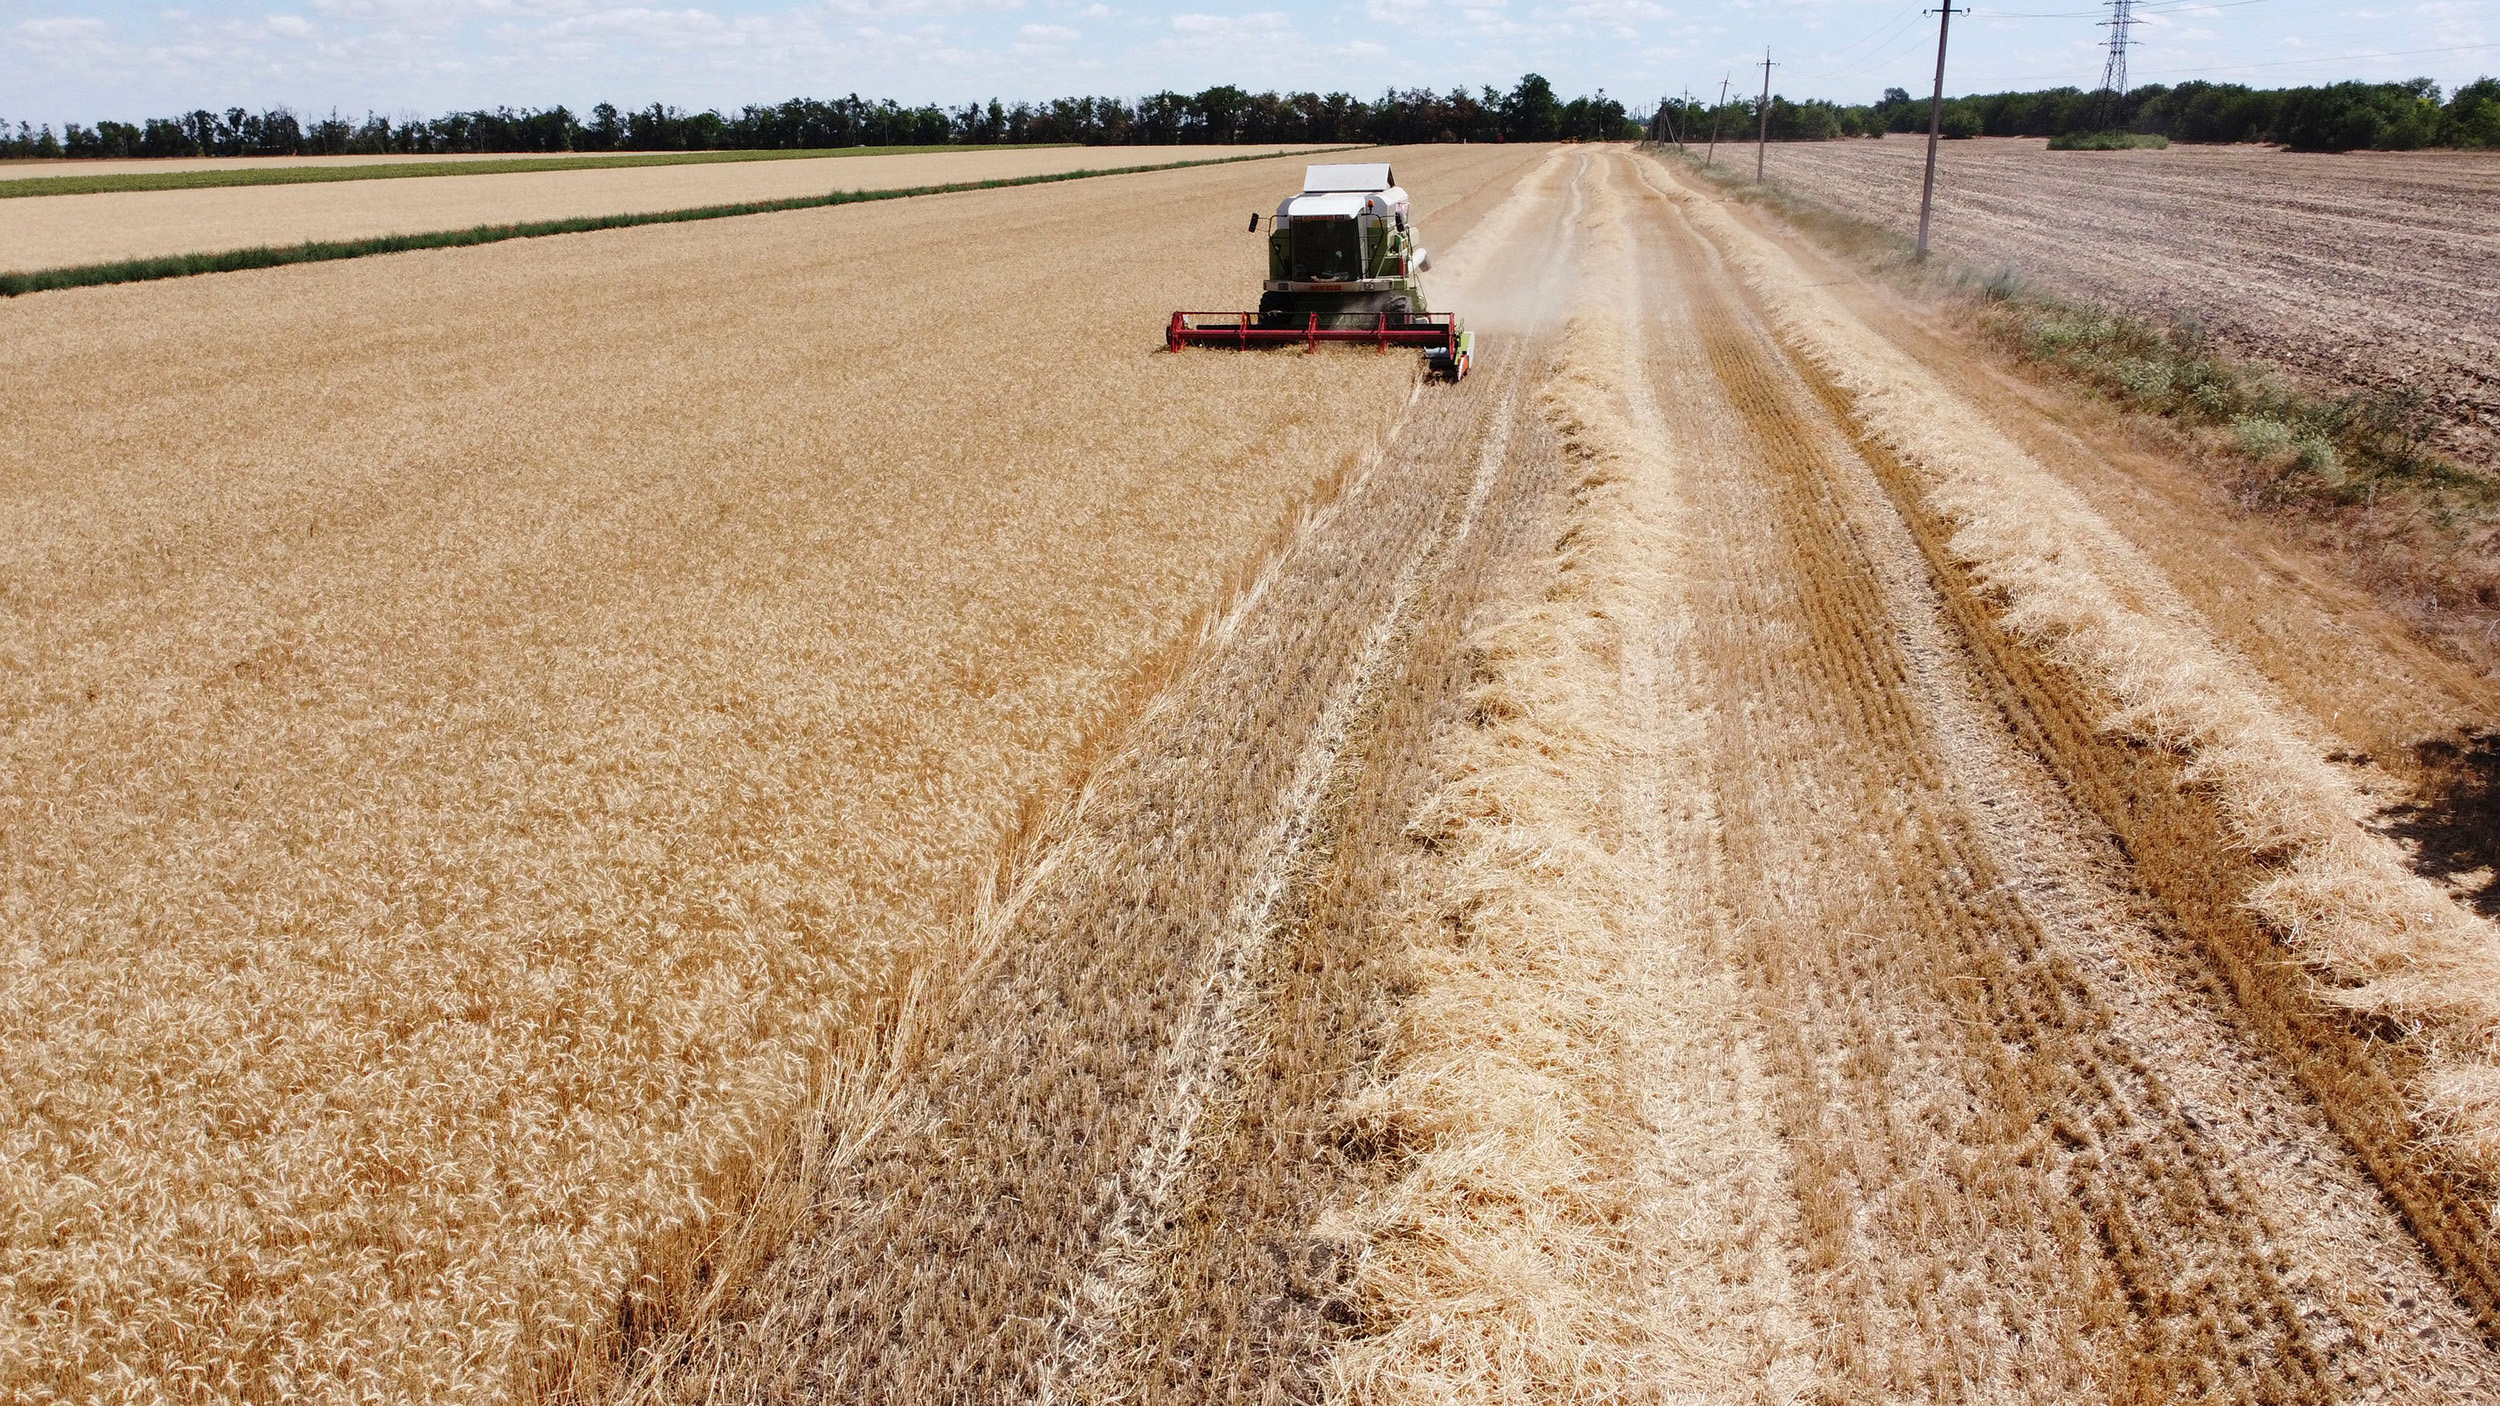 A combine harvester in a wheat field near Mykolaiv, Ukraine, on July 21.